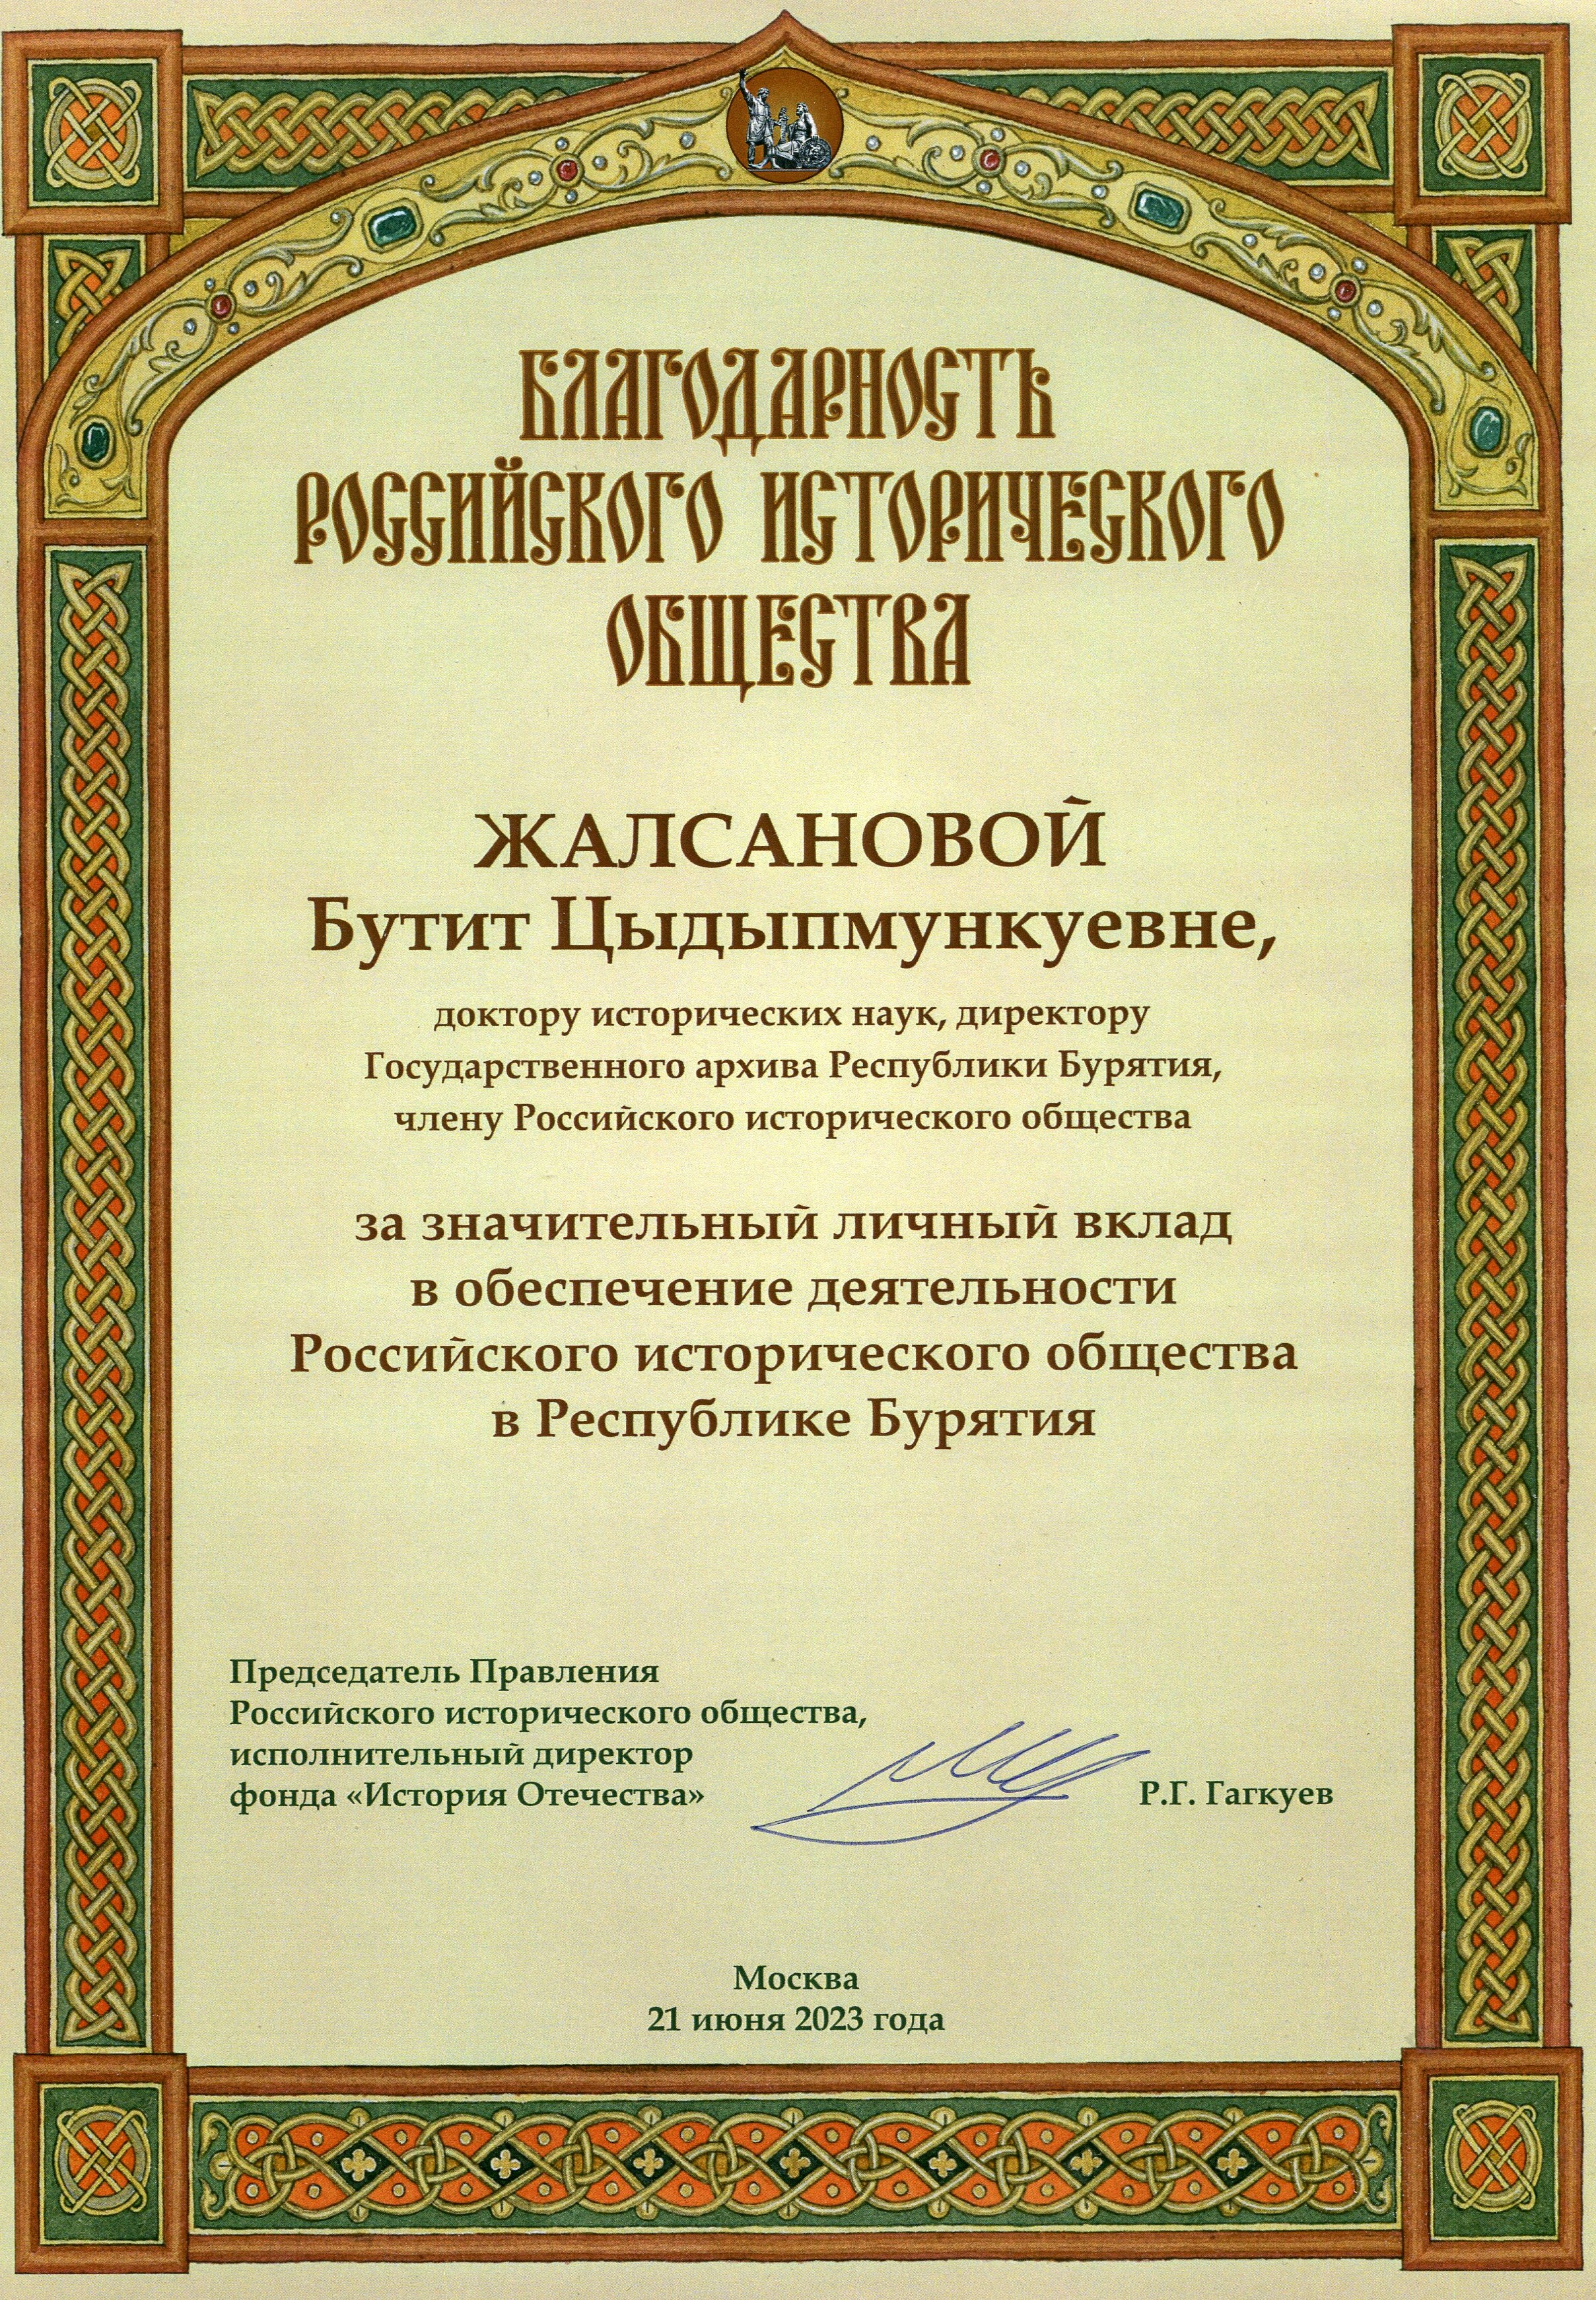 Благодарность от Российского исторического общества Госархиву Бурятии